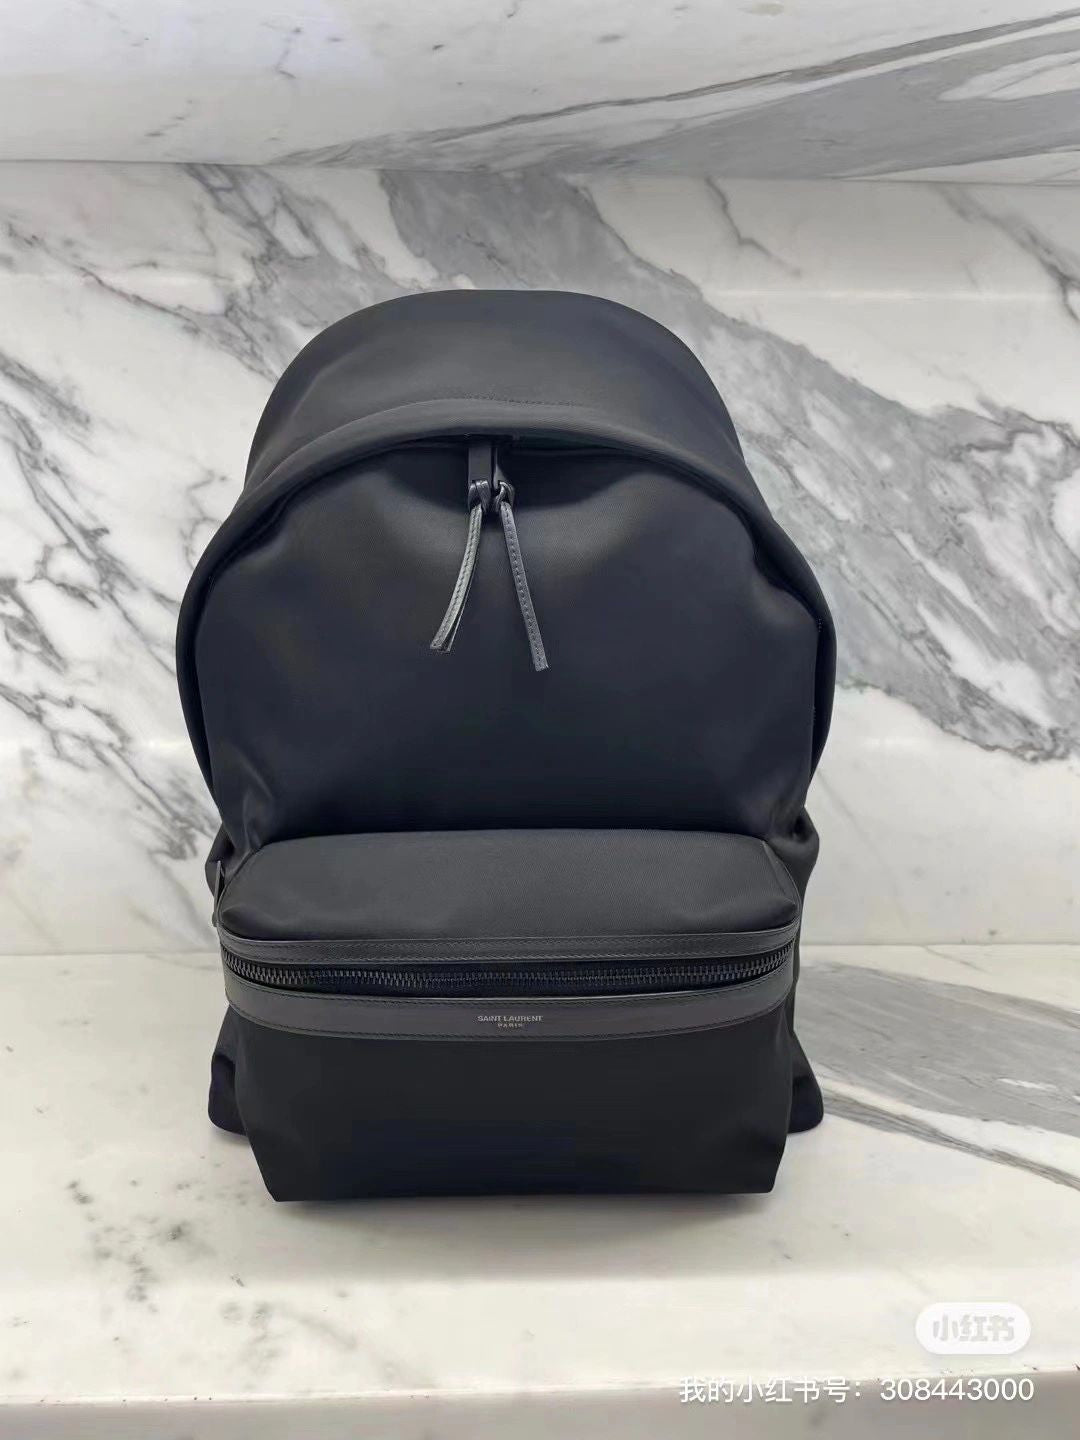 YSL Backpack